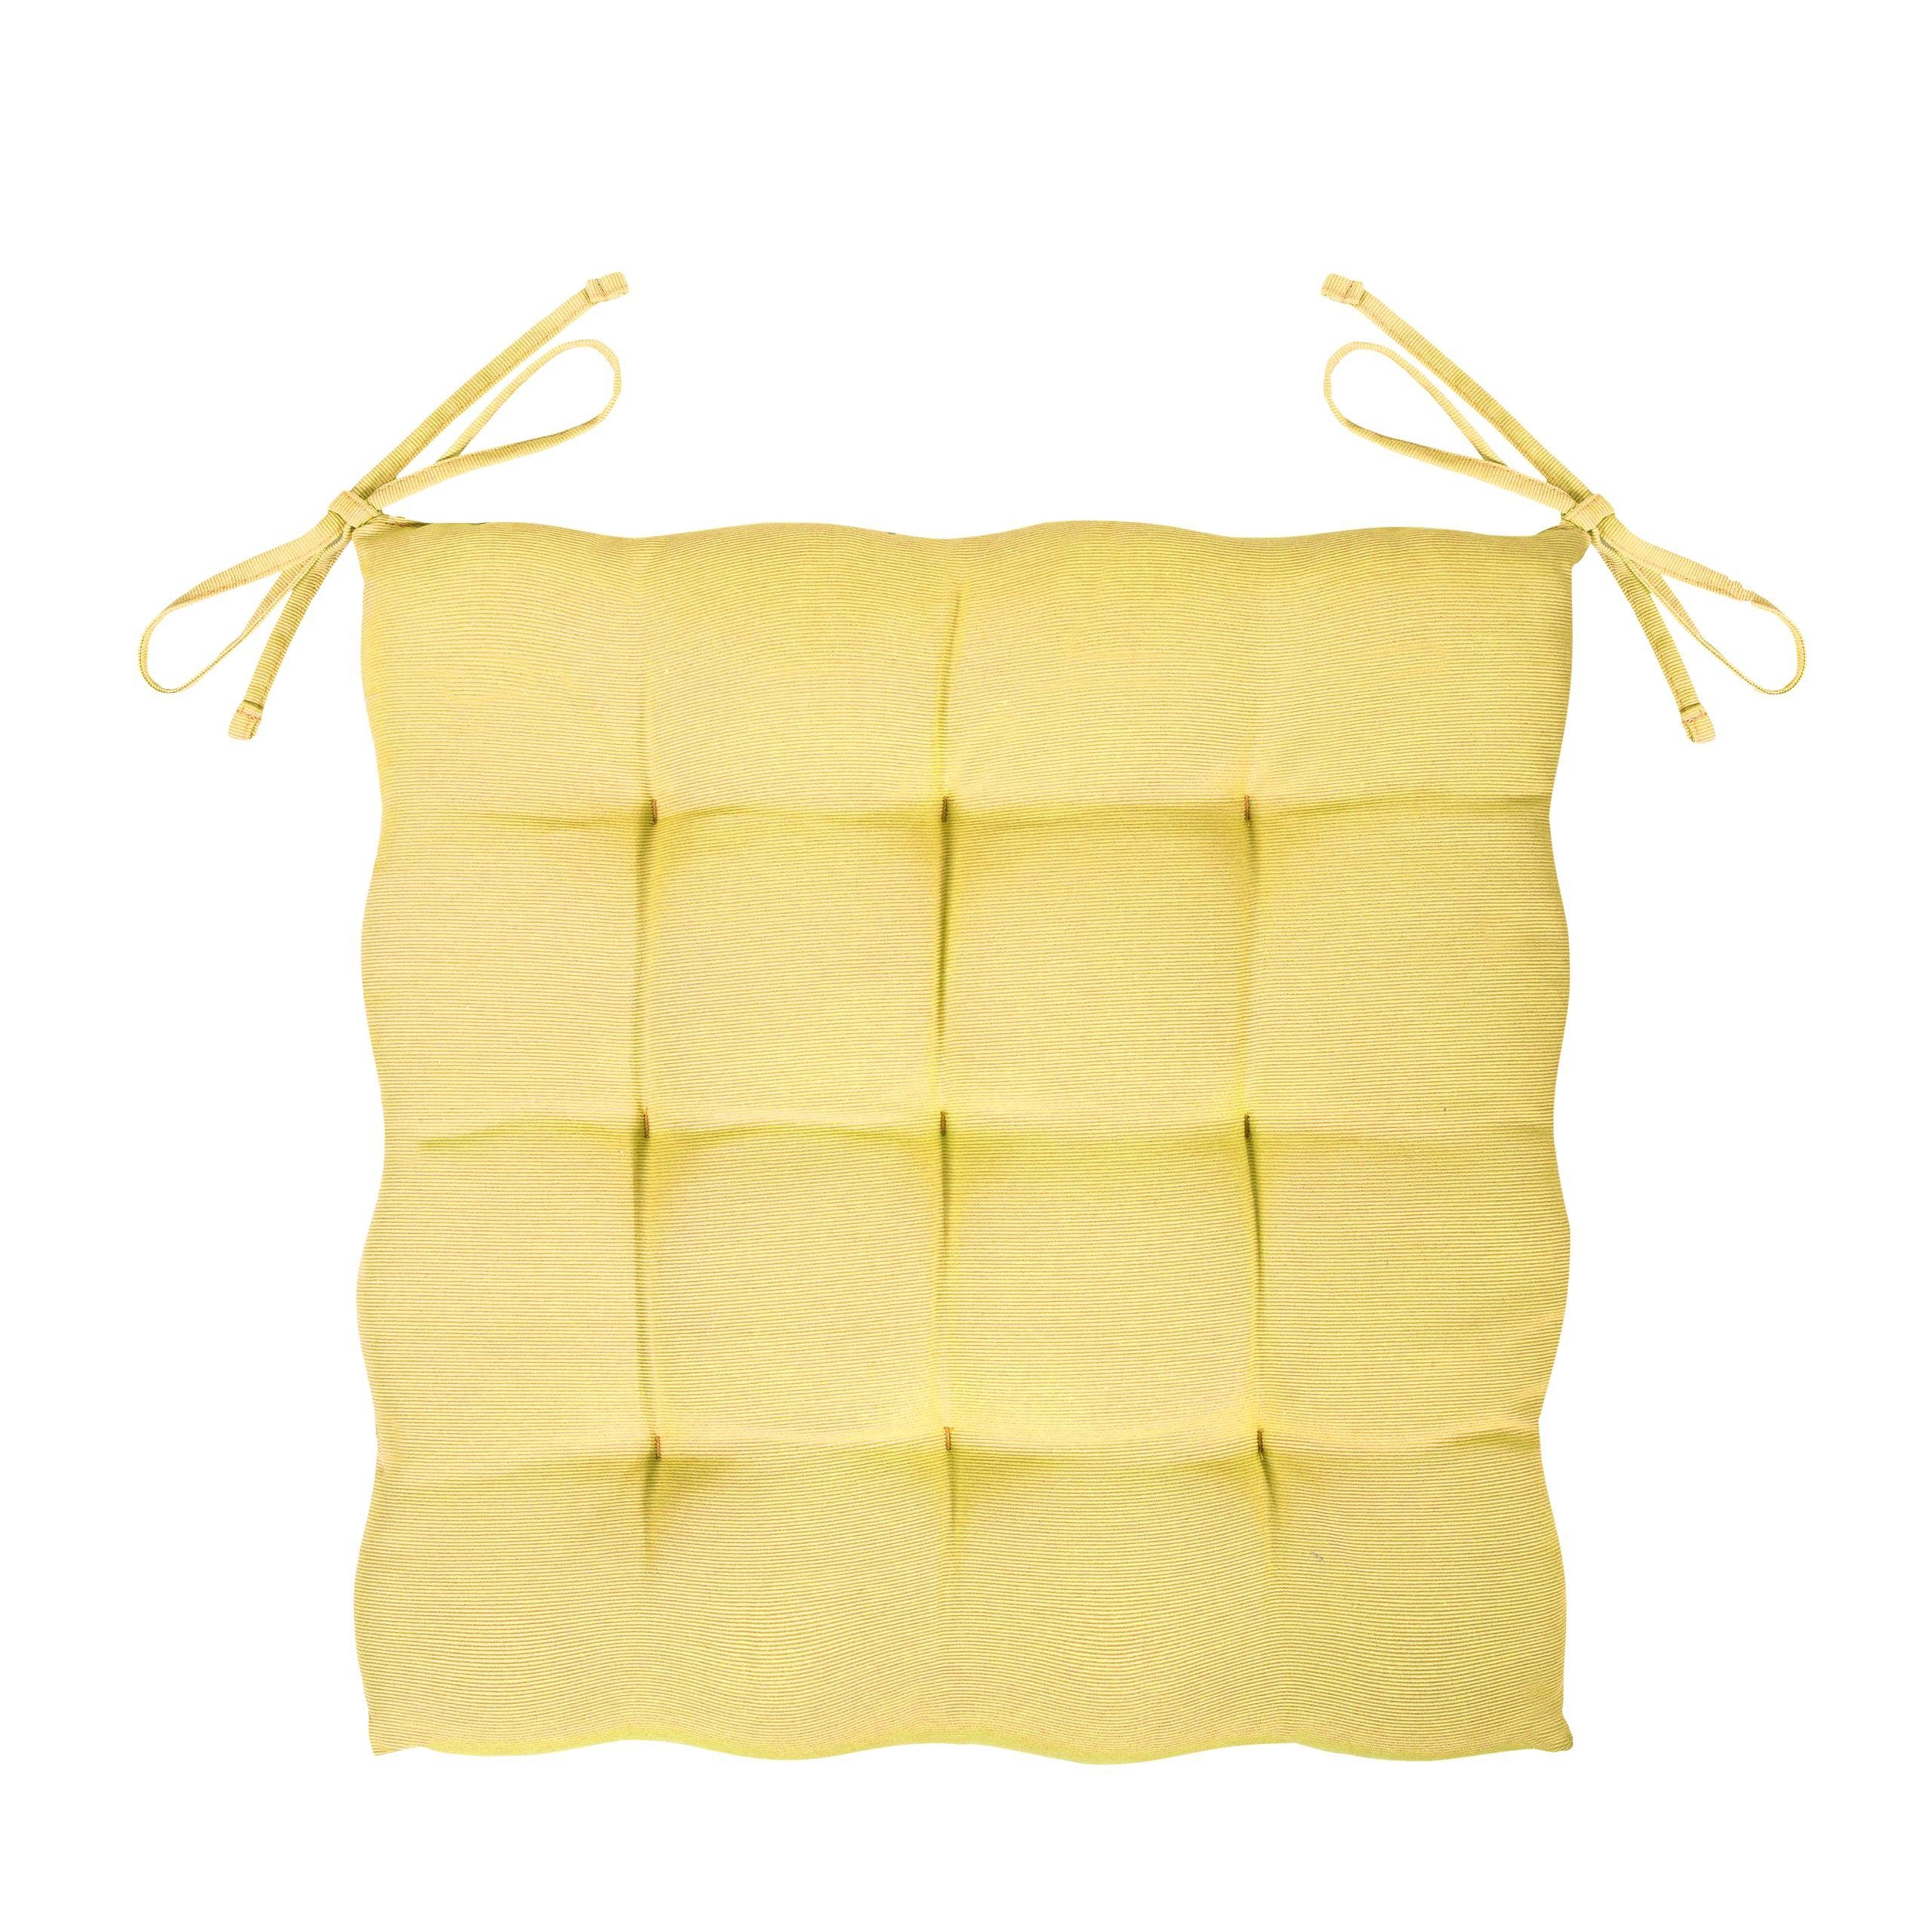 GREEN MARK Textilien Sitzkissen Innen, Gelb oder weich Sitzkissen, Stuhlkissen Außen für 40x40cm gefüllt